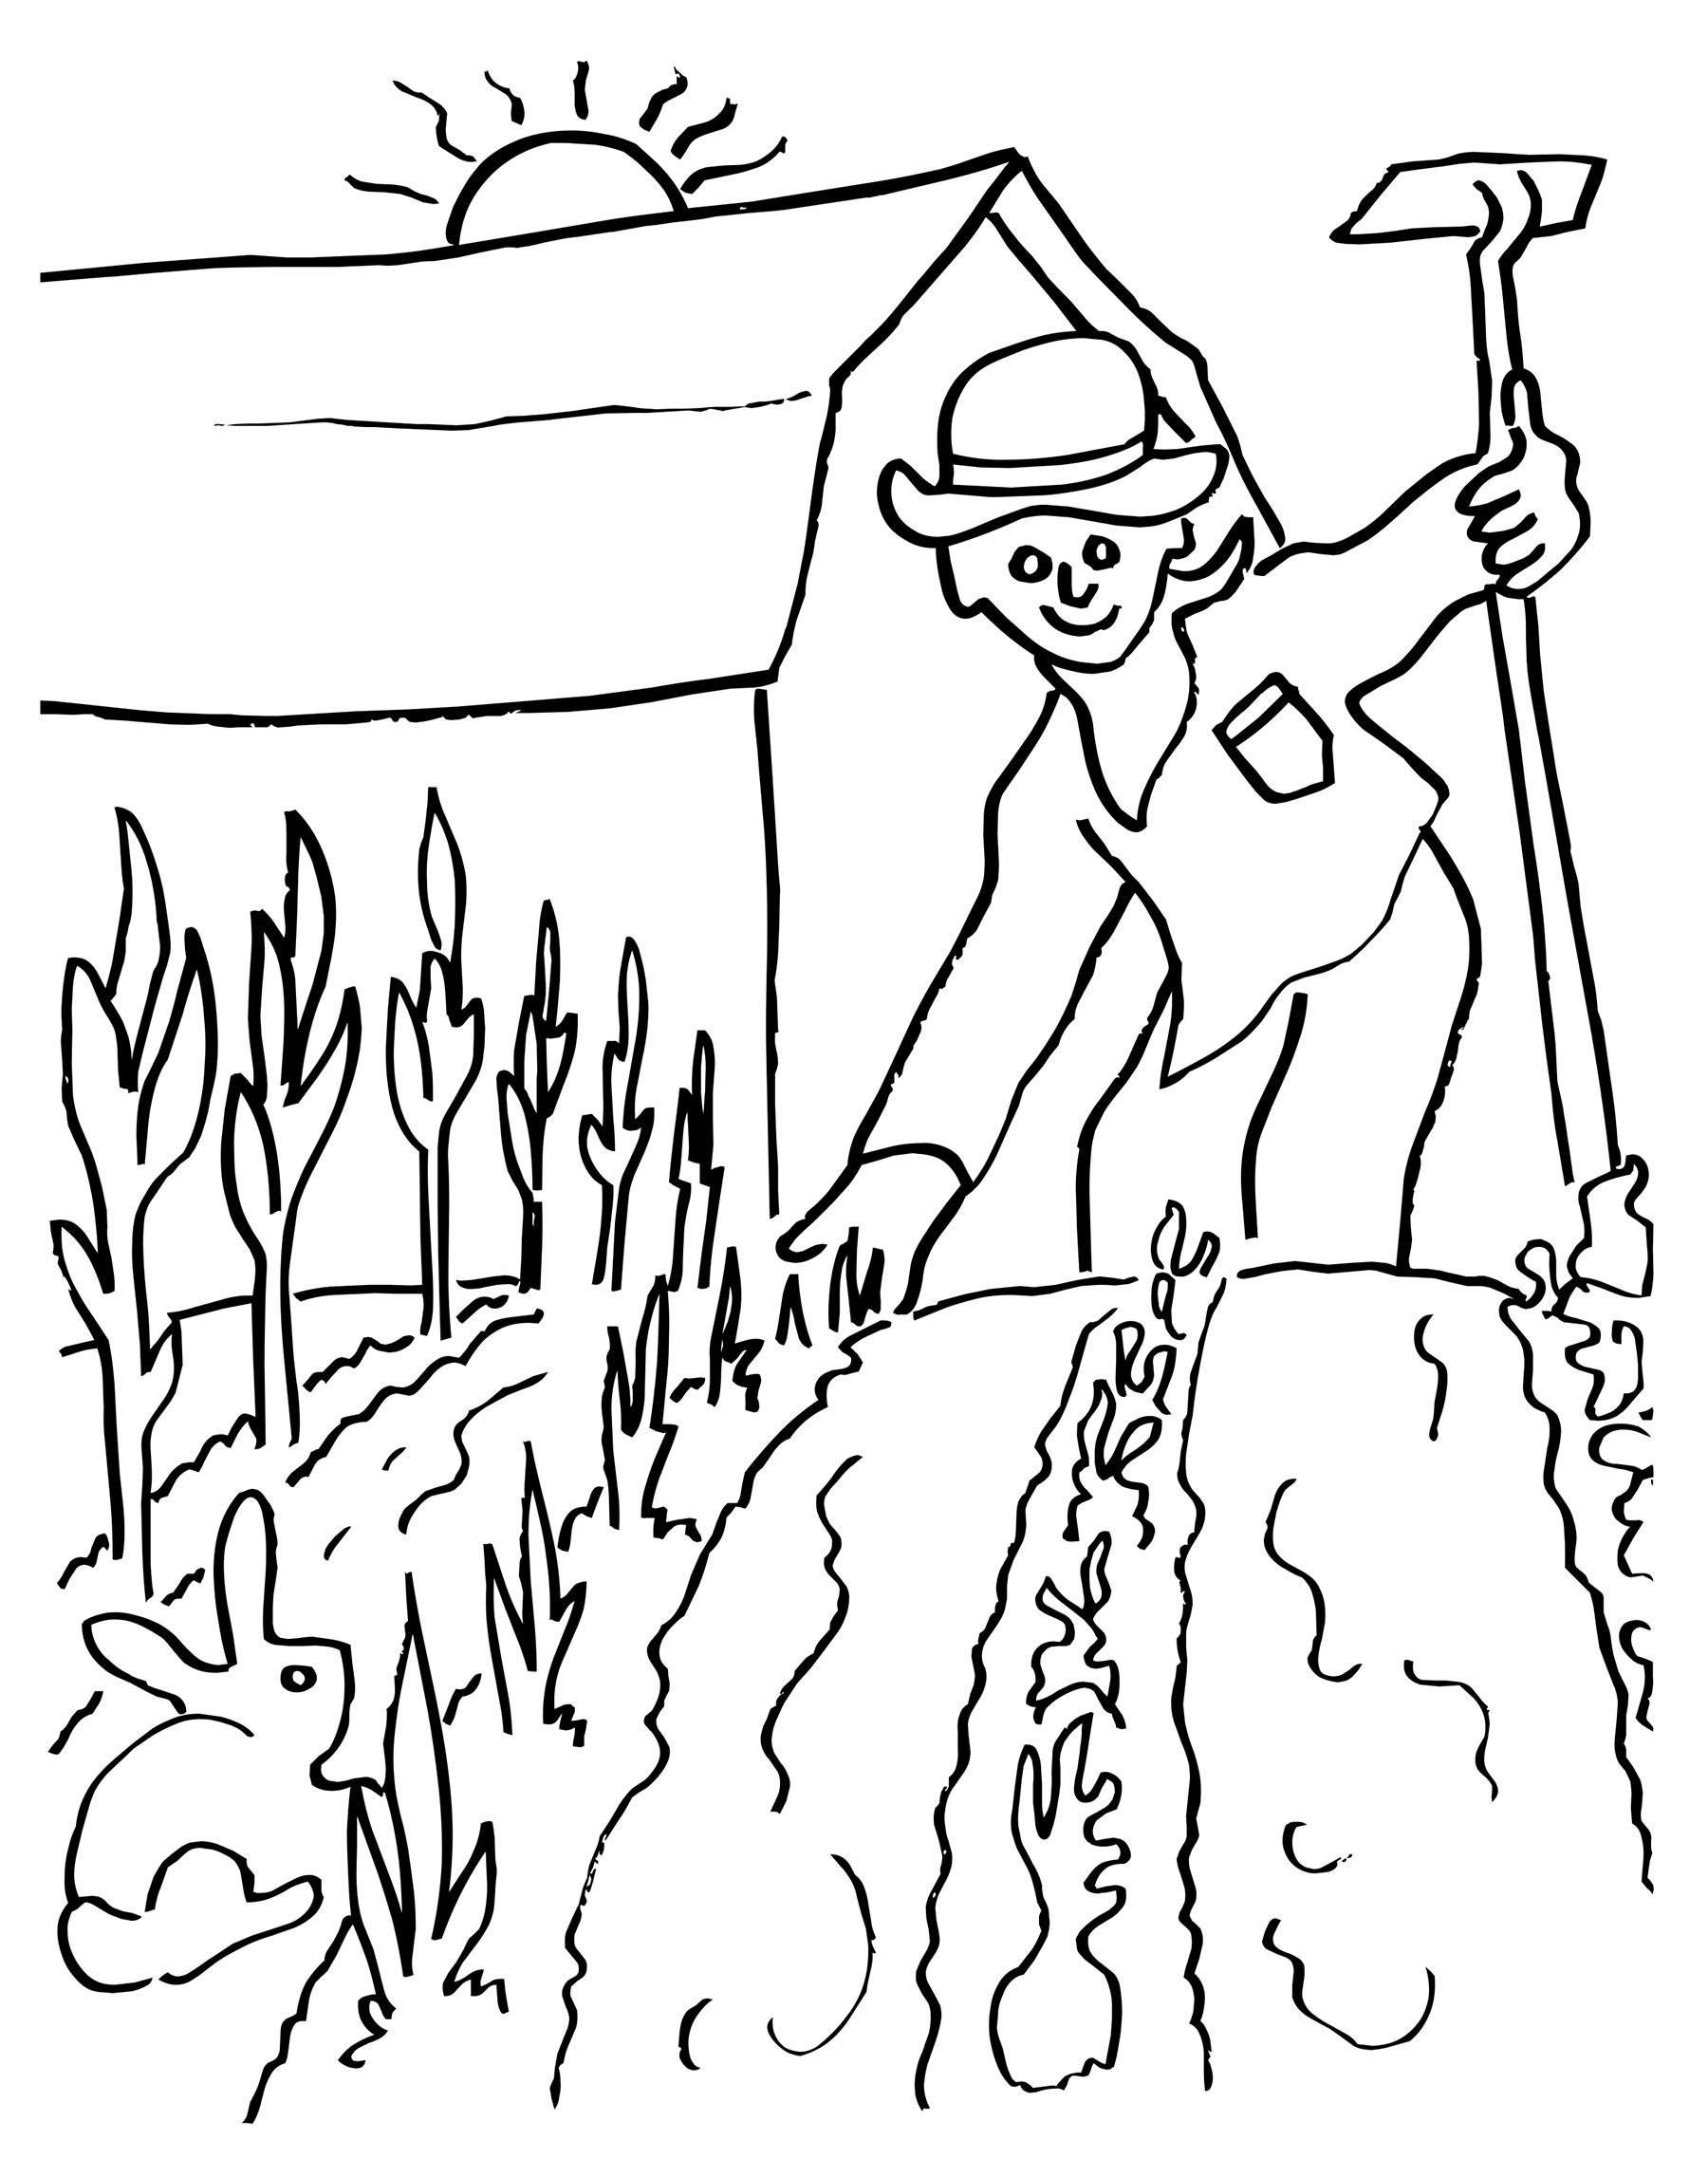 Tranh đồng quê vẽ cánh đồng lúa chín  tranh phong thủy